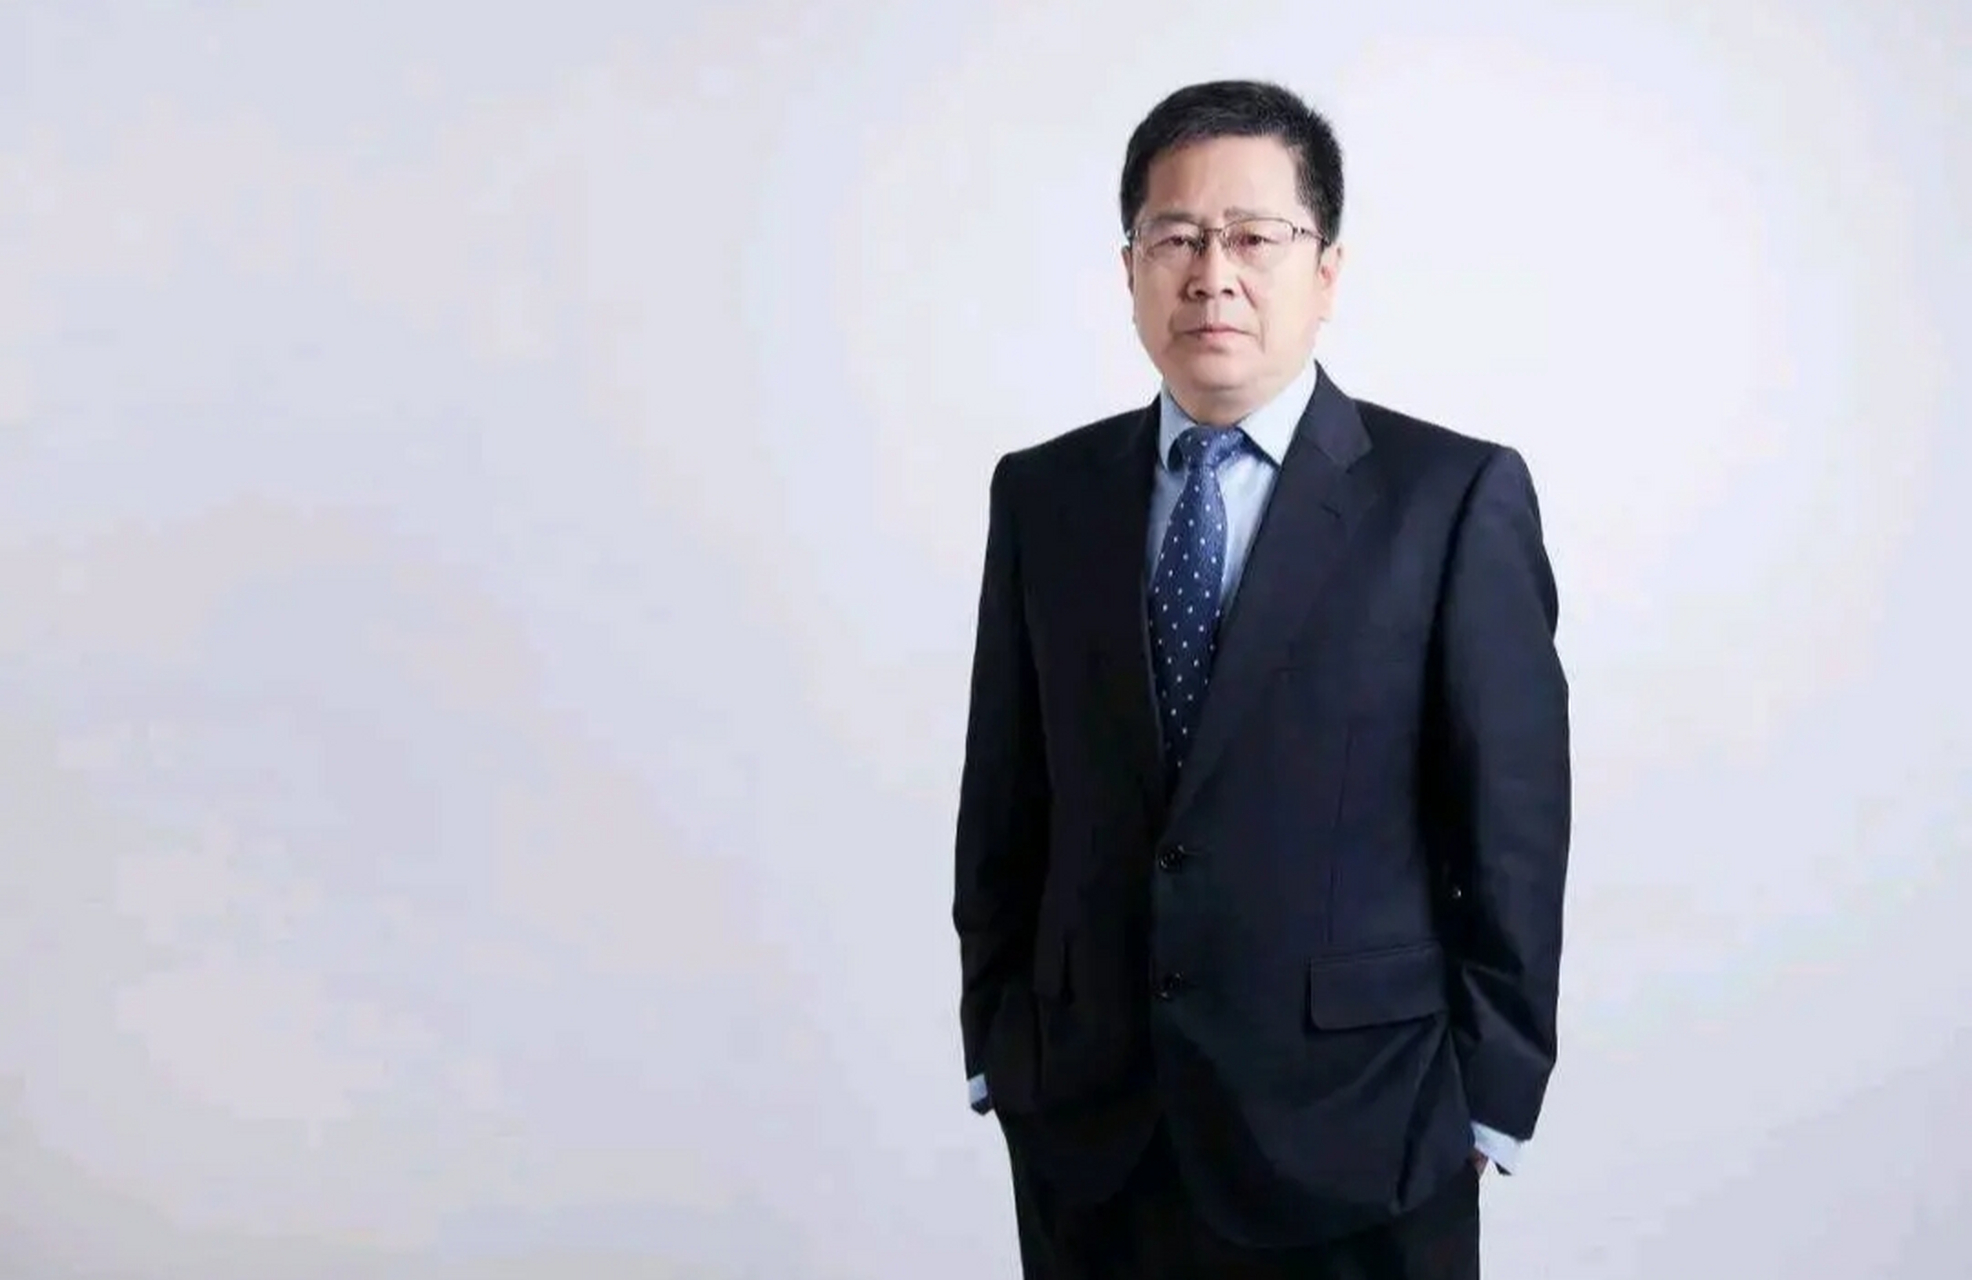 姜滨,歌尔股份公司创始人,1966年出生于山东威海,高中毕业后考入北京